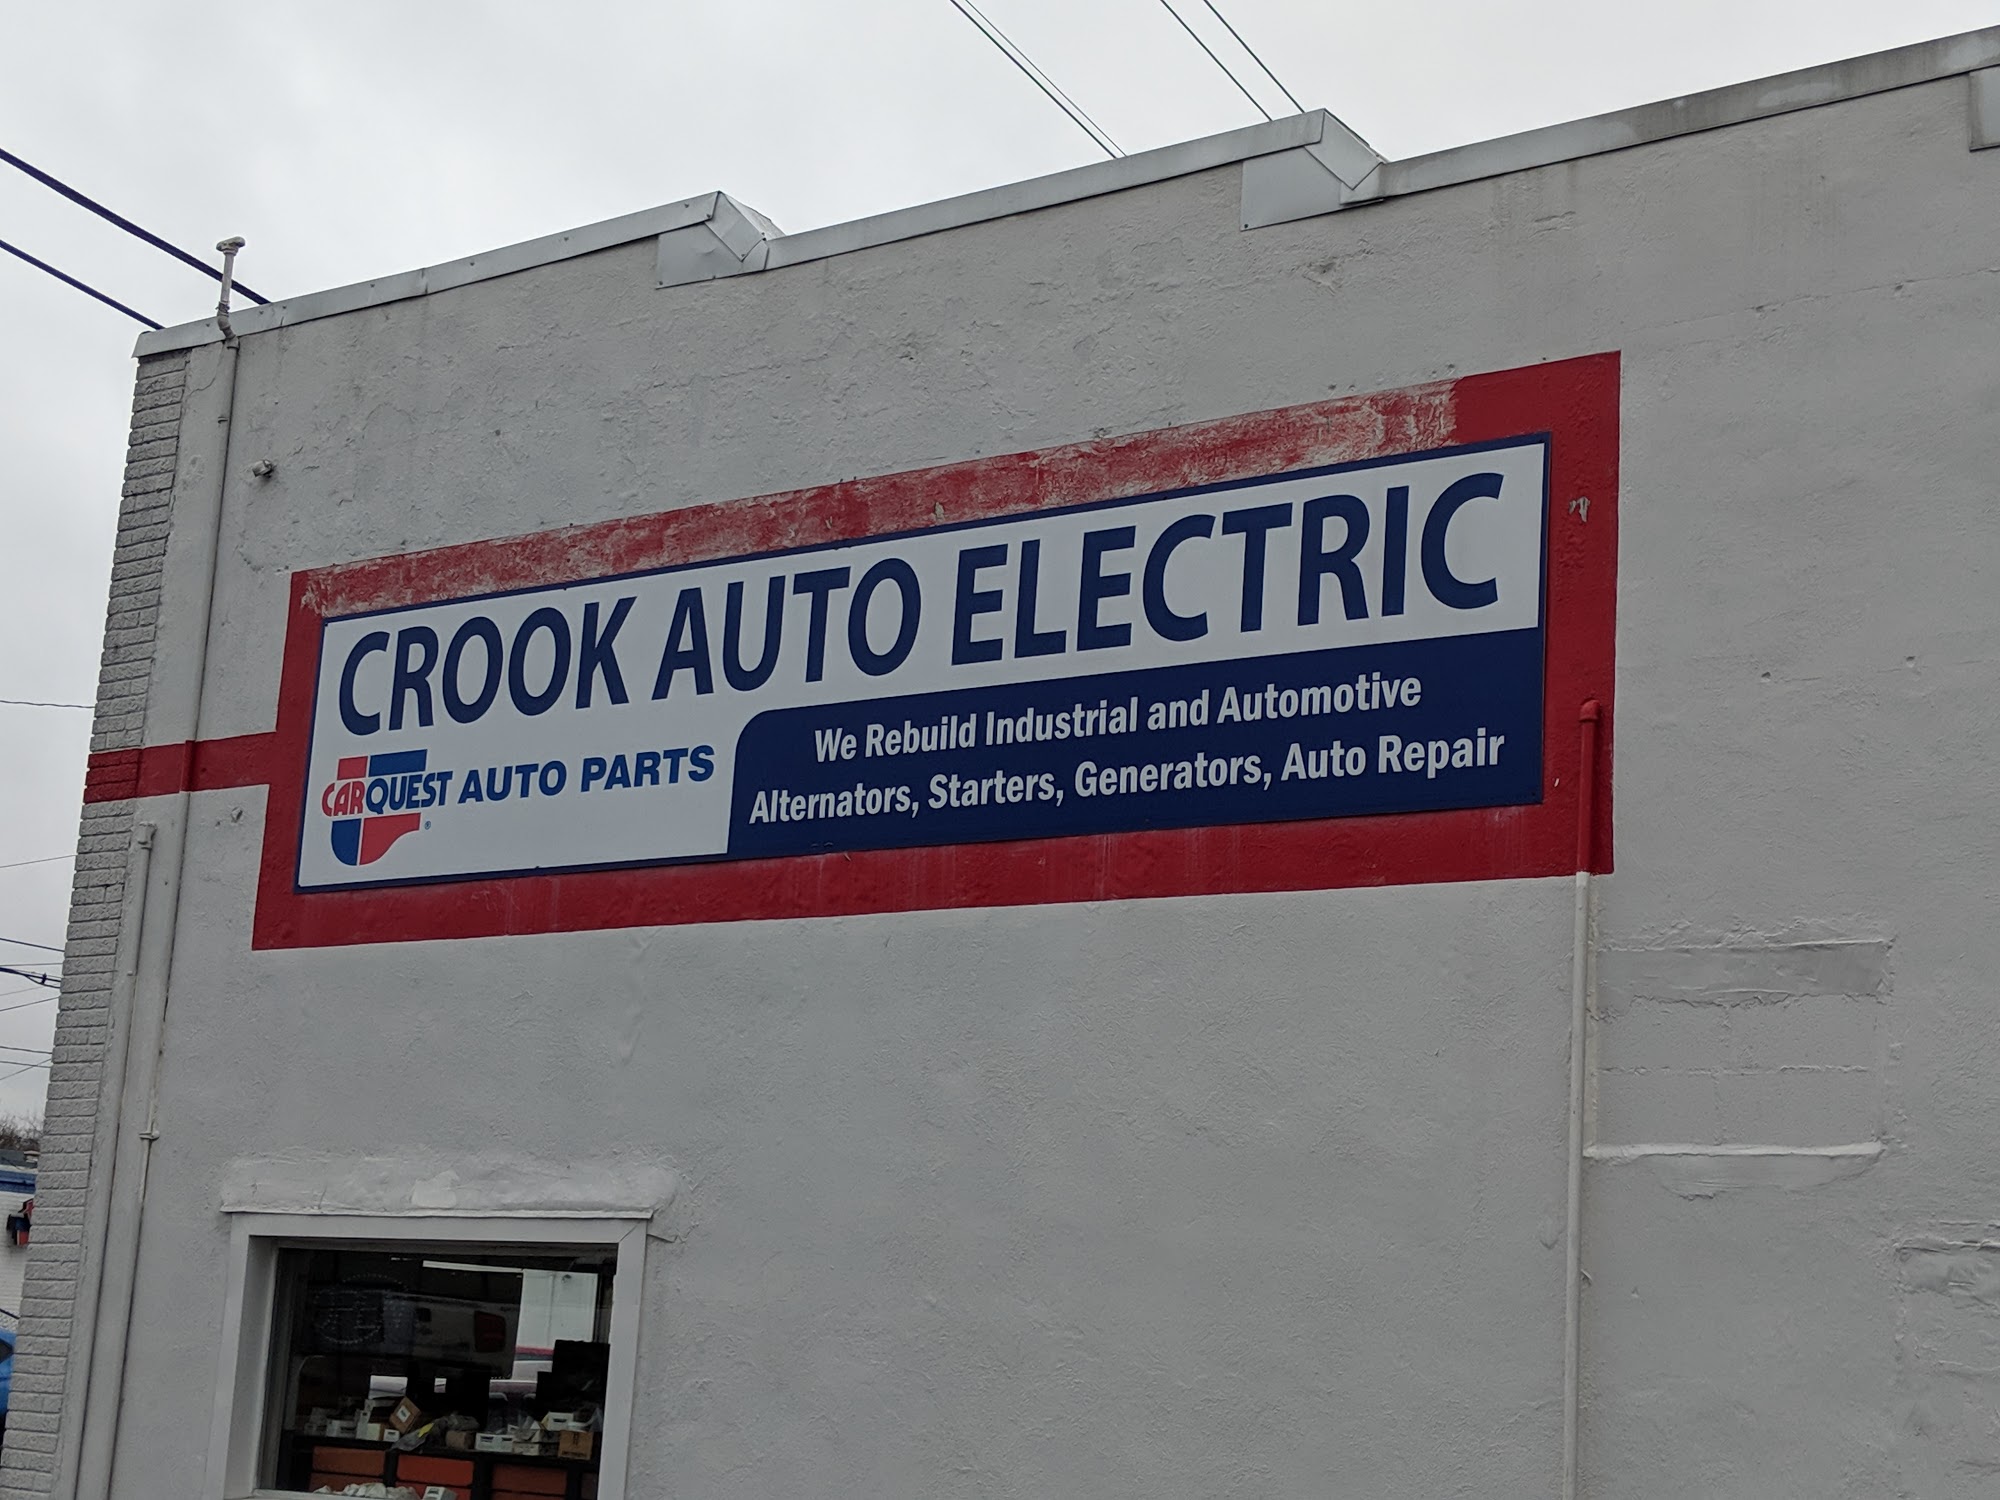 Carquest Auto Parts - CROOK AUTO ELECTRIC